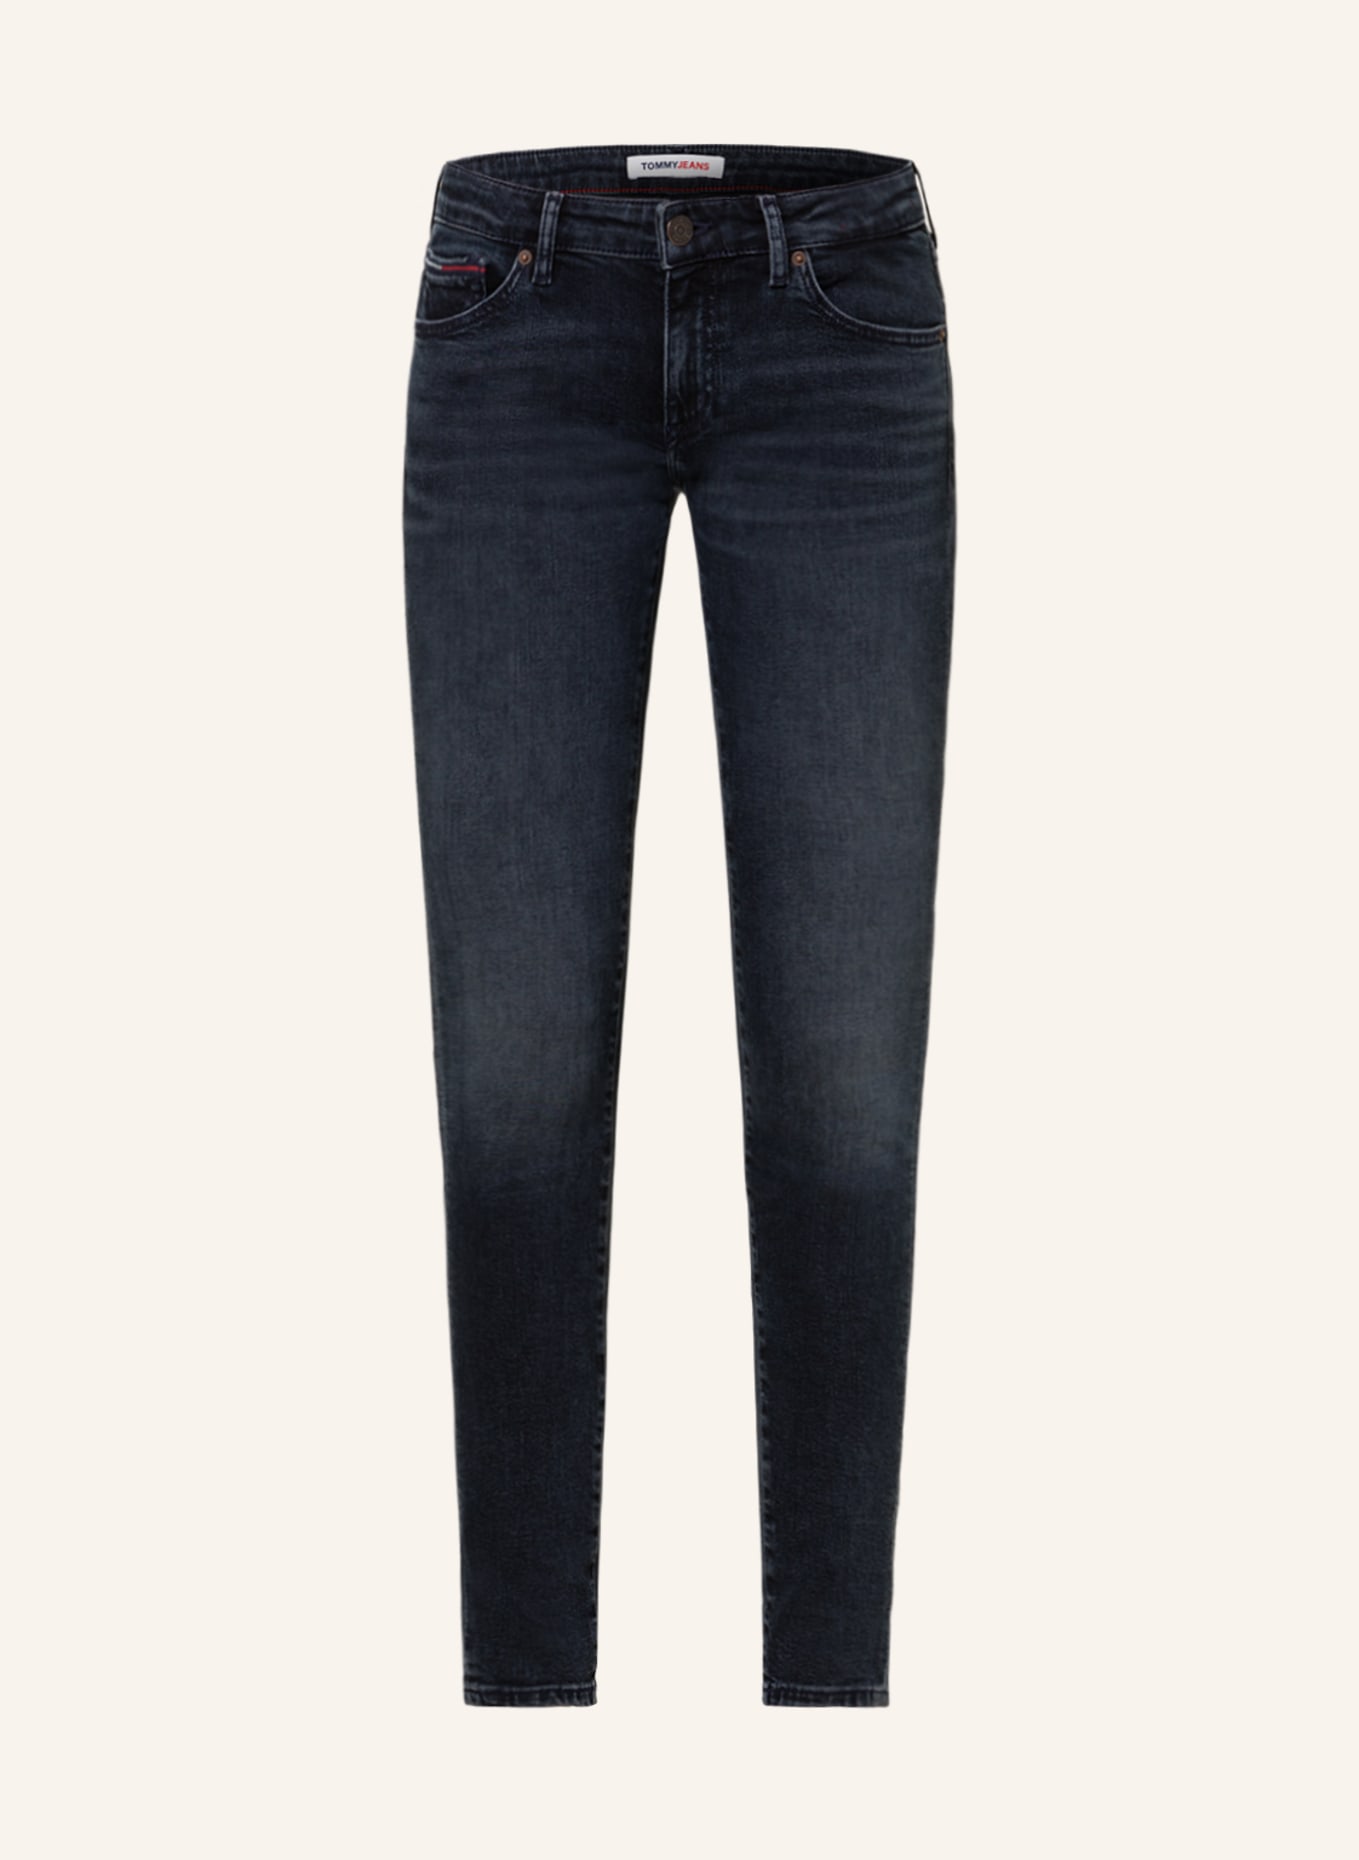 TOMMY JEANS Skinny jeans SOPHIE, Color: 1BK Denim Dark (Image 1)